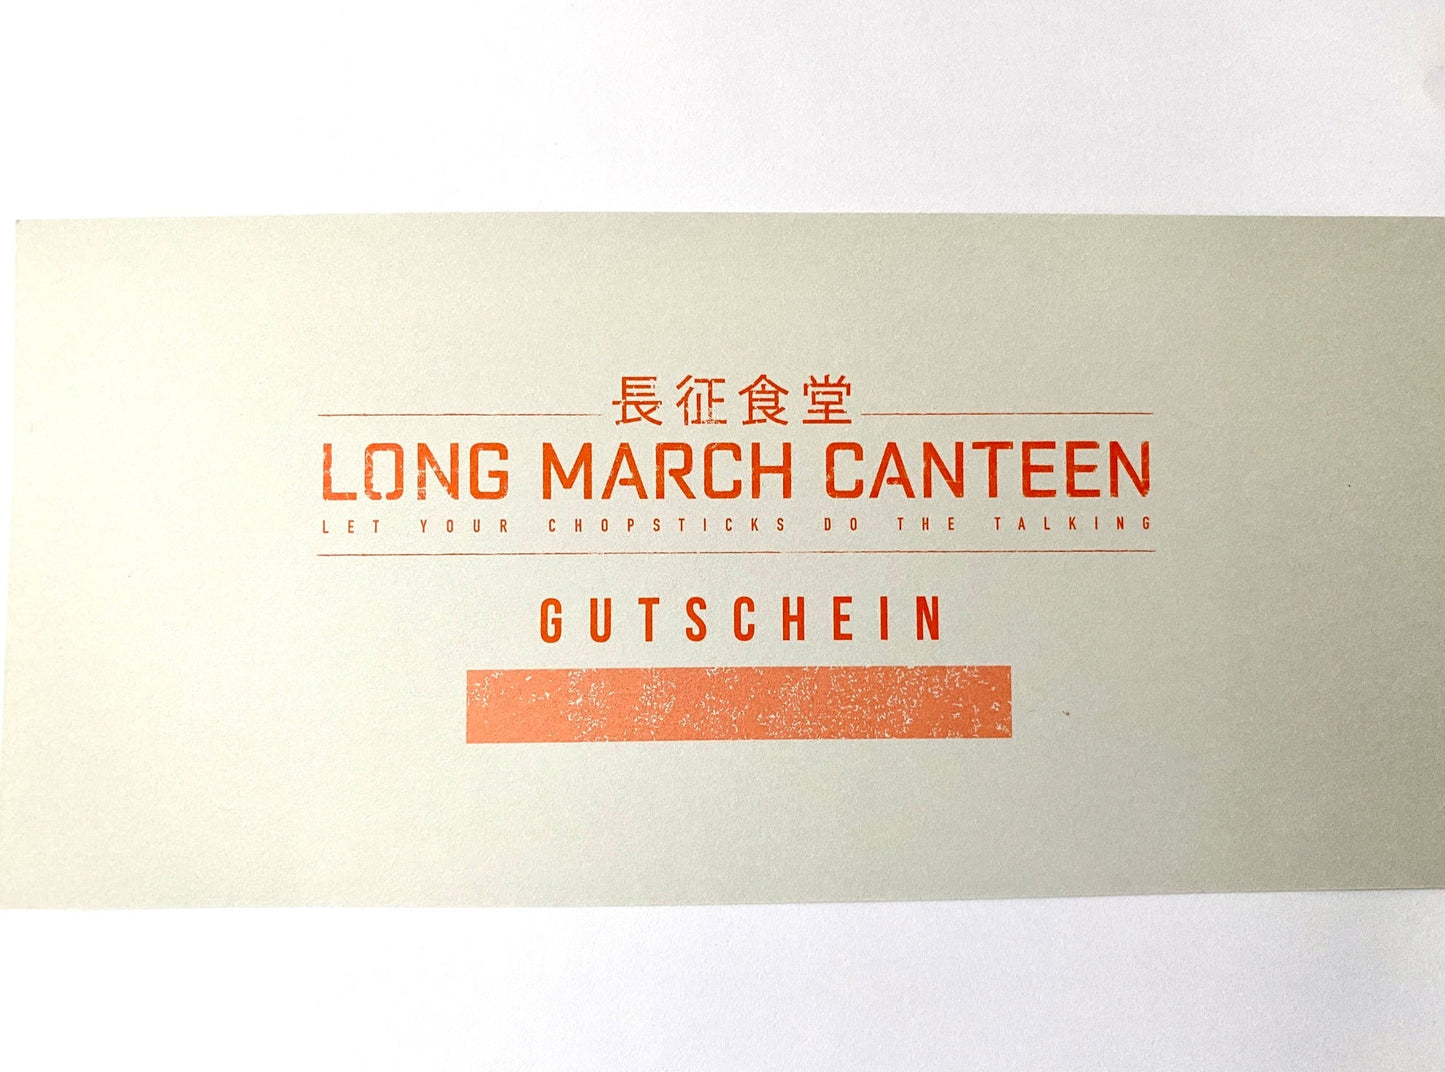 LMC Gutschein/Voucher